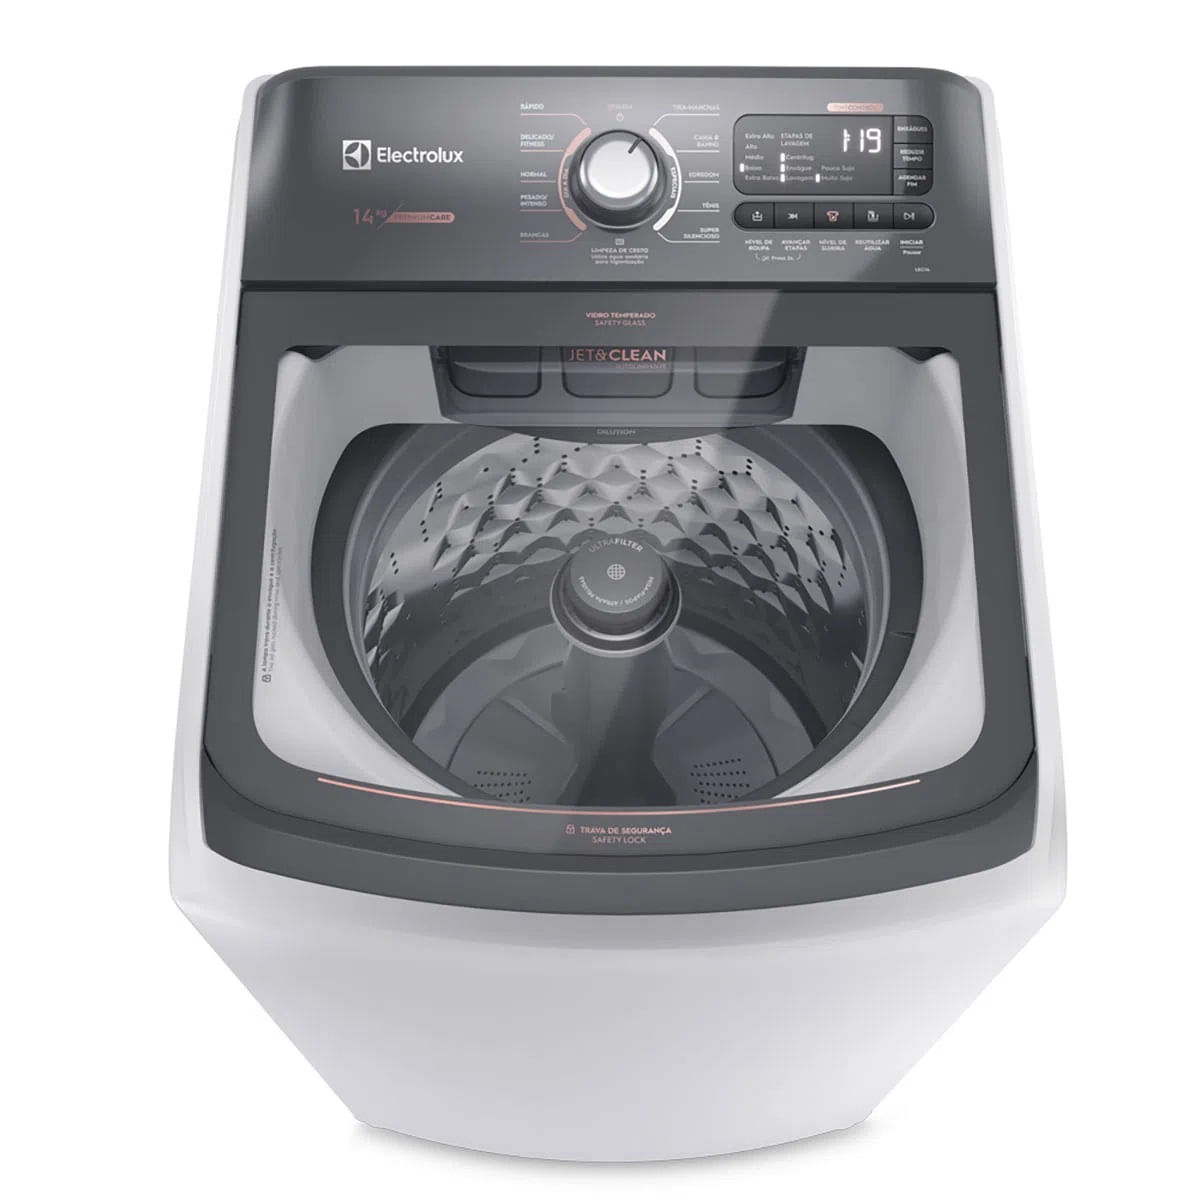 maquina-de-lavar-14kg-electrolux-premium-care-com-cesto-inox-jet-clean-e-time-control-lec14-220v-2.jpg